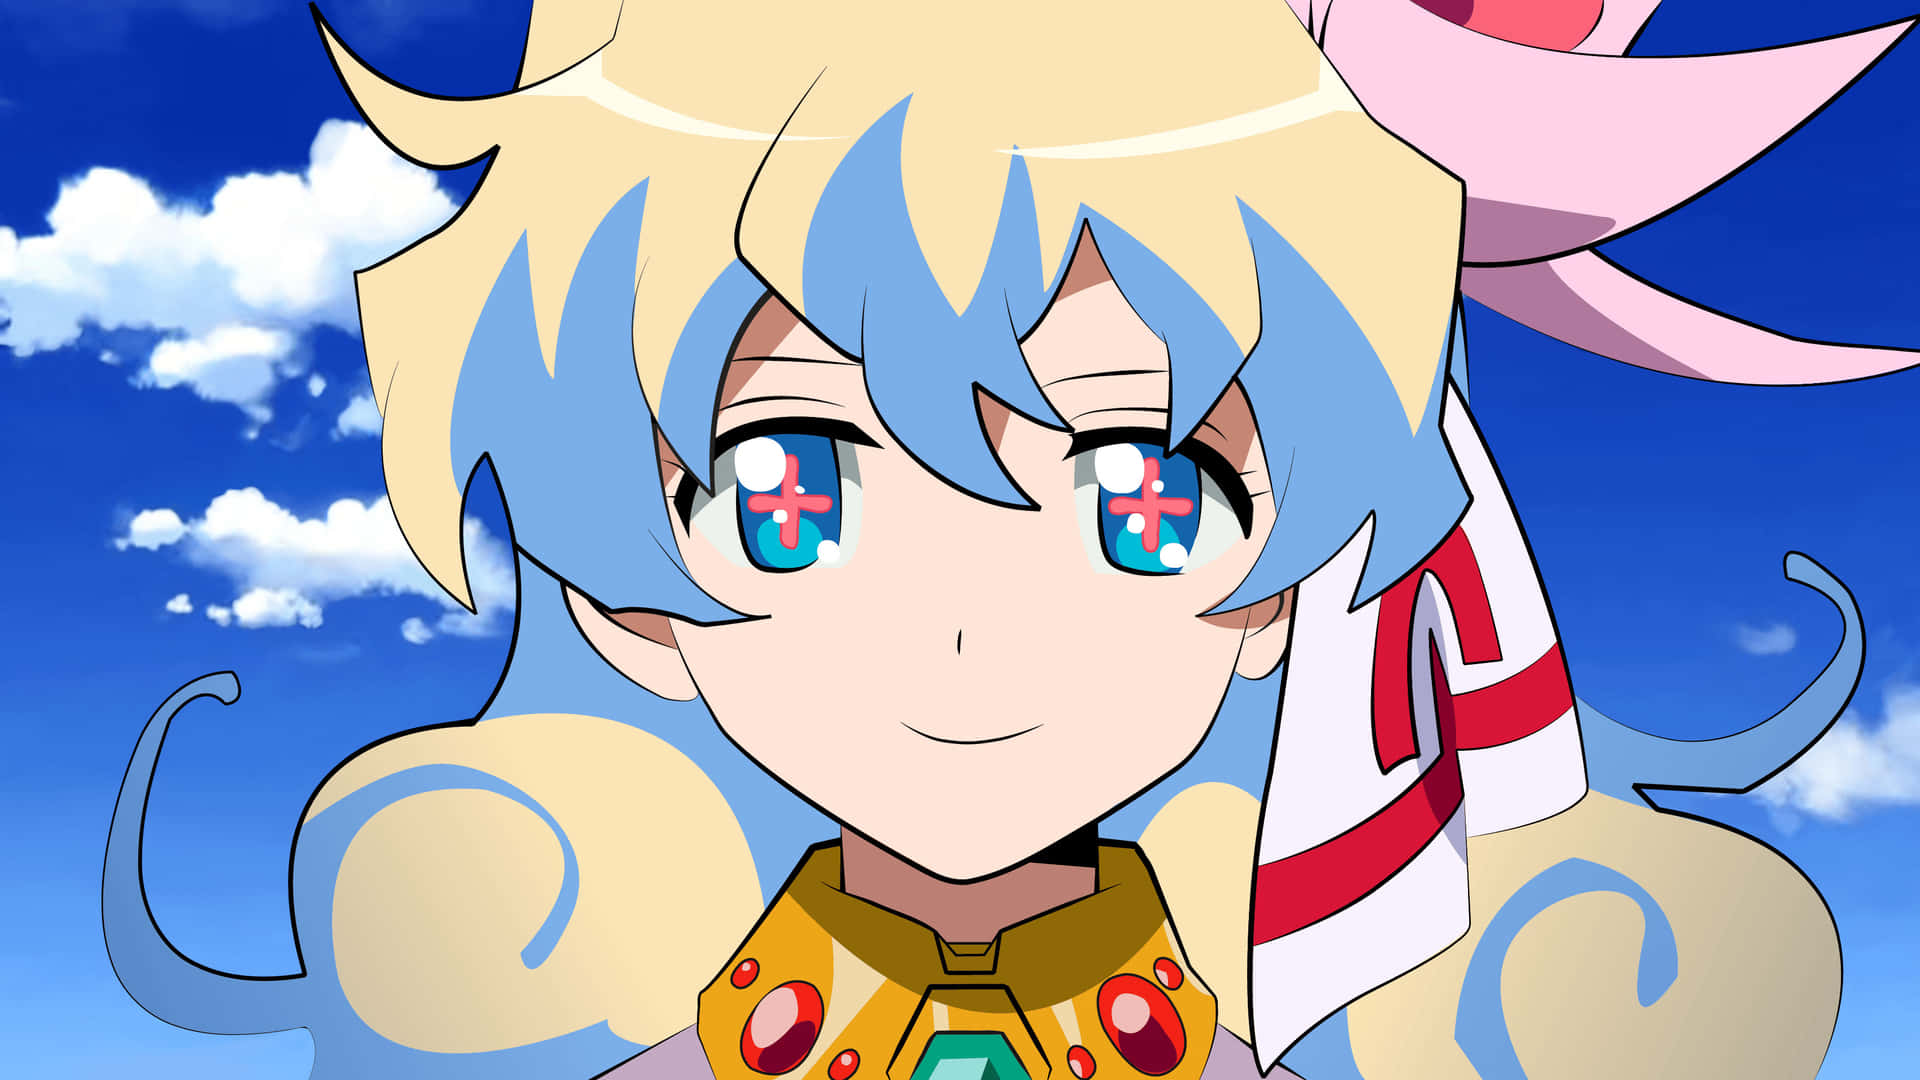 Niateppelin Con Ojos Brillantes En Un Estilo De Anime Vibrante. Fondo de pantalla